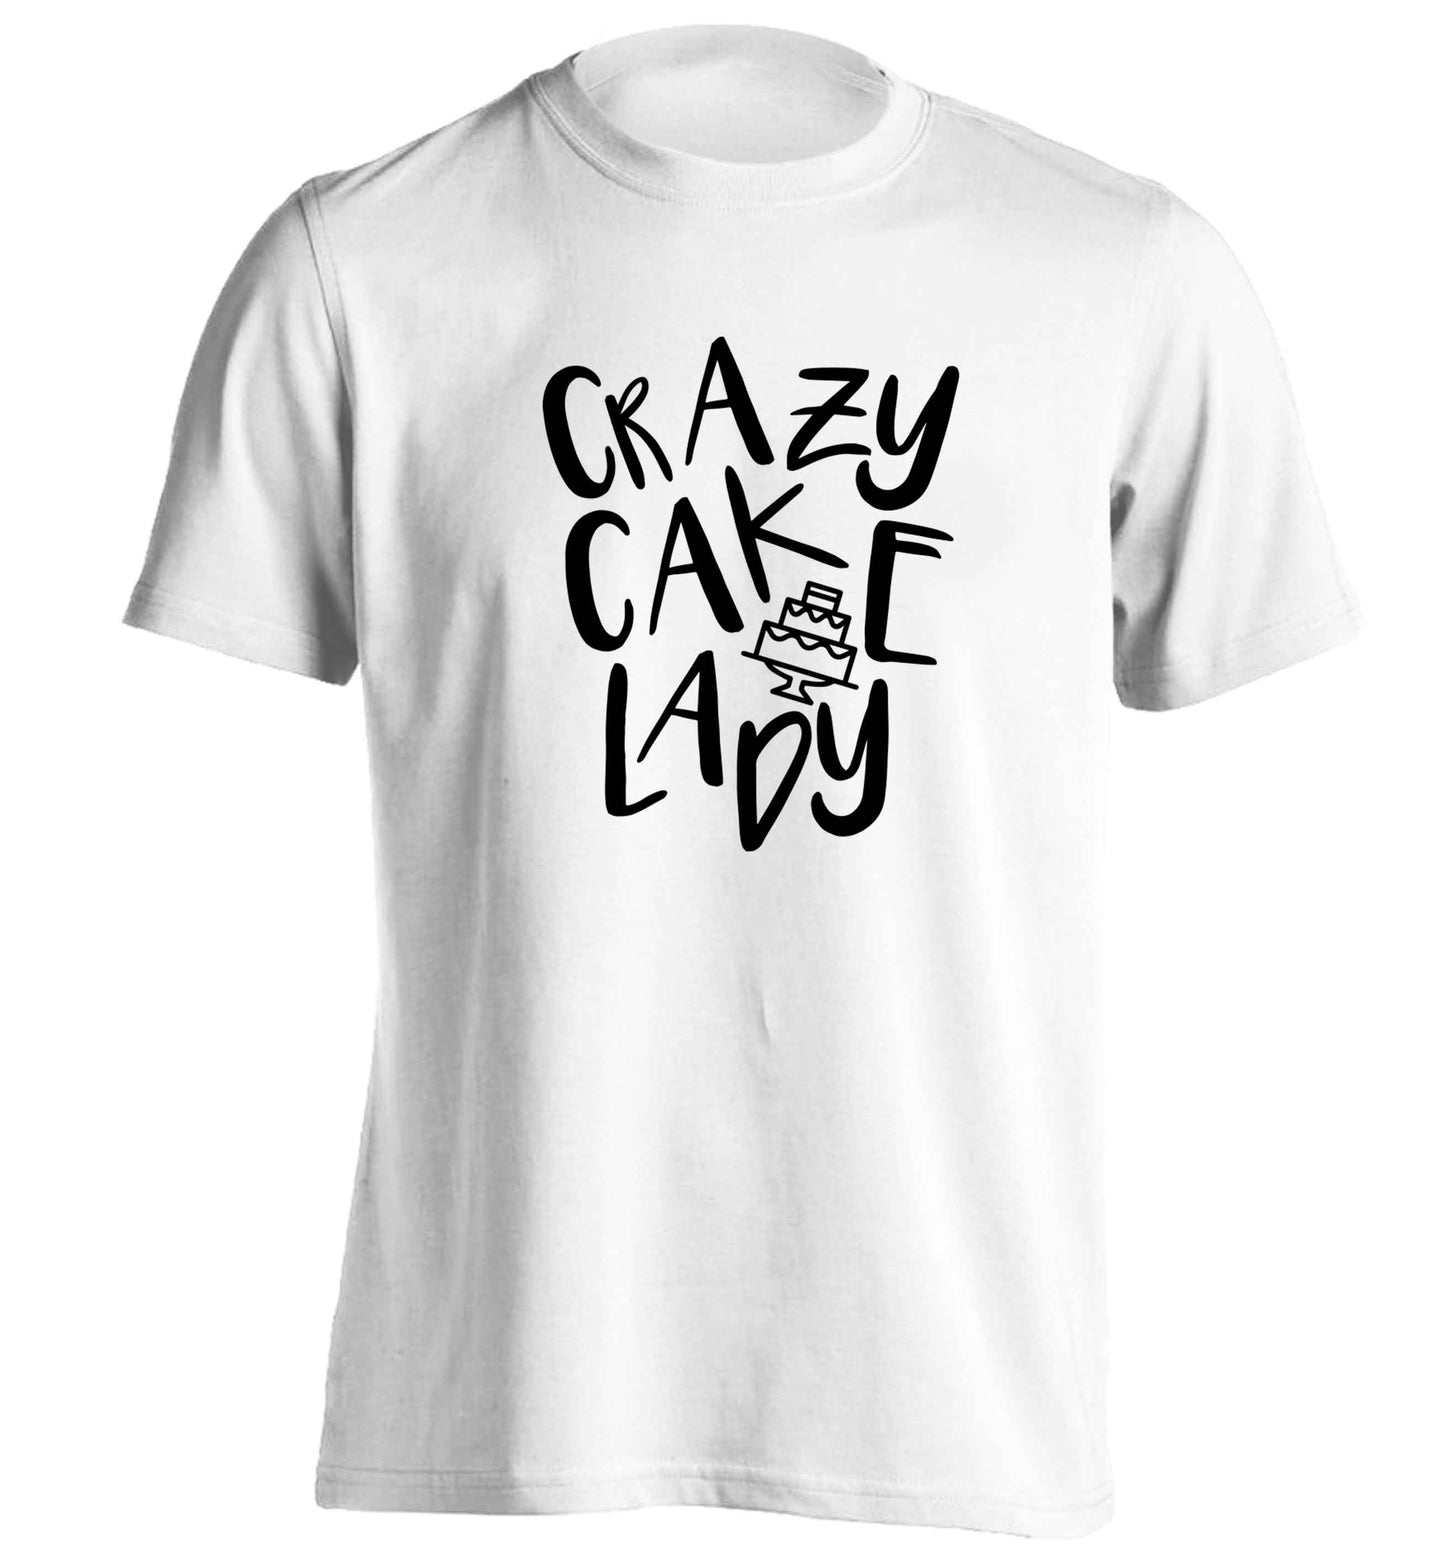 Crazy cake lady adults unisex white Tshirt 2XL